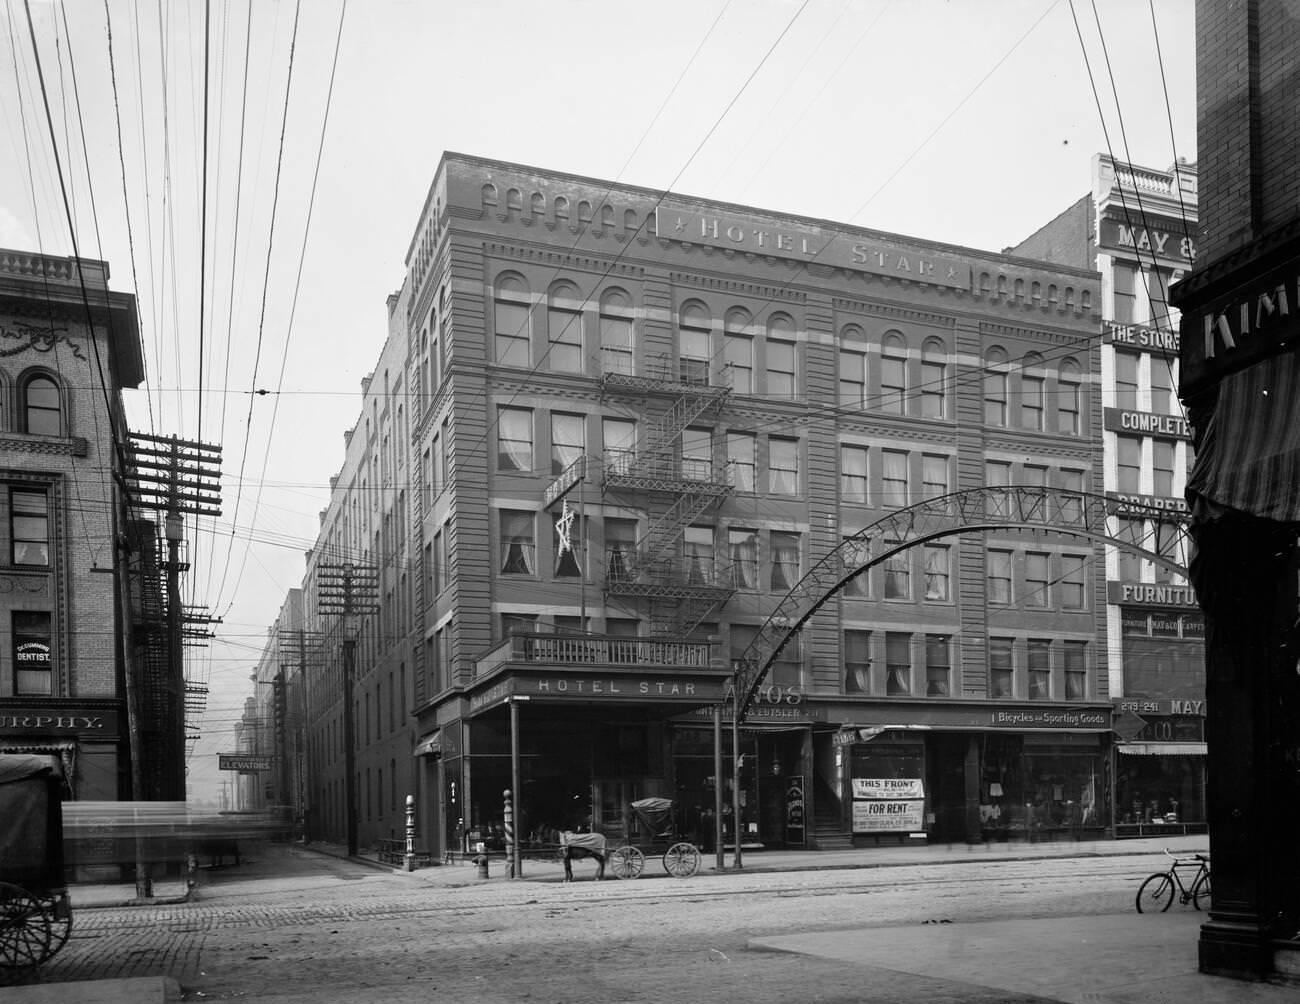 Hotel Star, Columbus, Ohio, 1900s